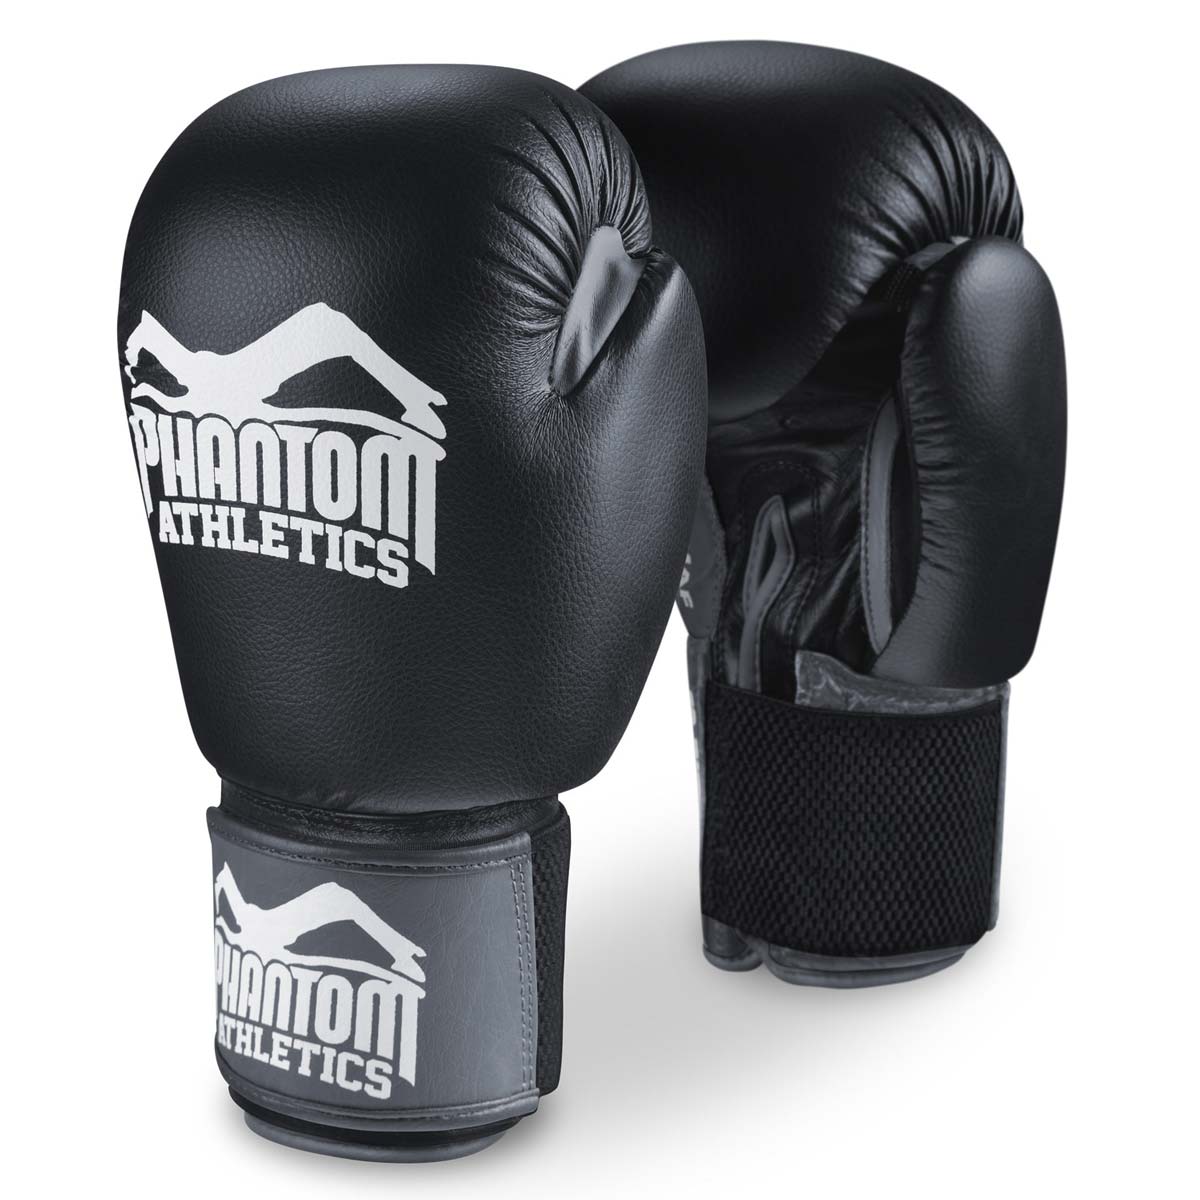 Los guantes de boxeo Phantom Ultra para entrenamiento, sparring y competición.